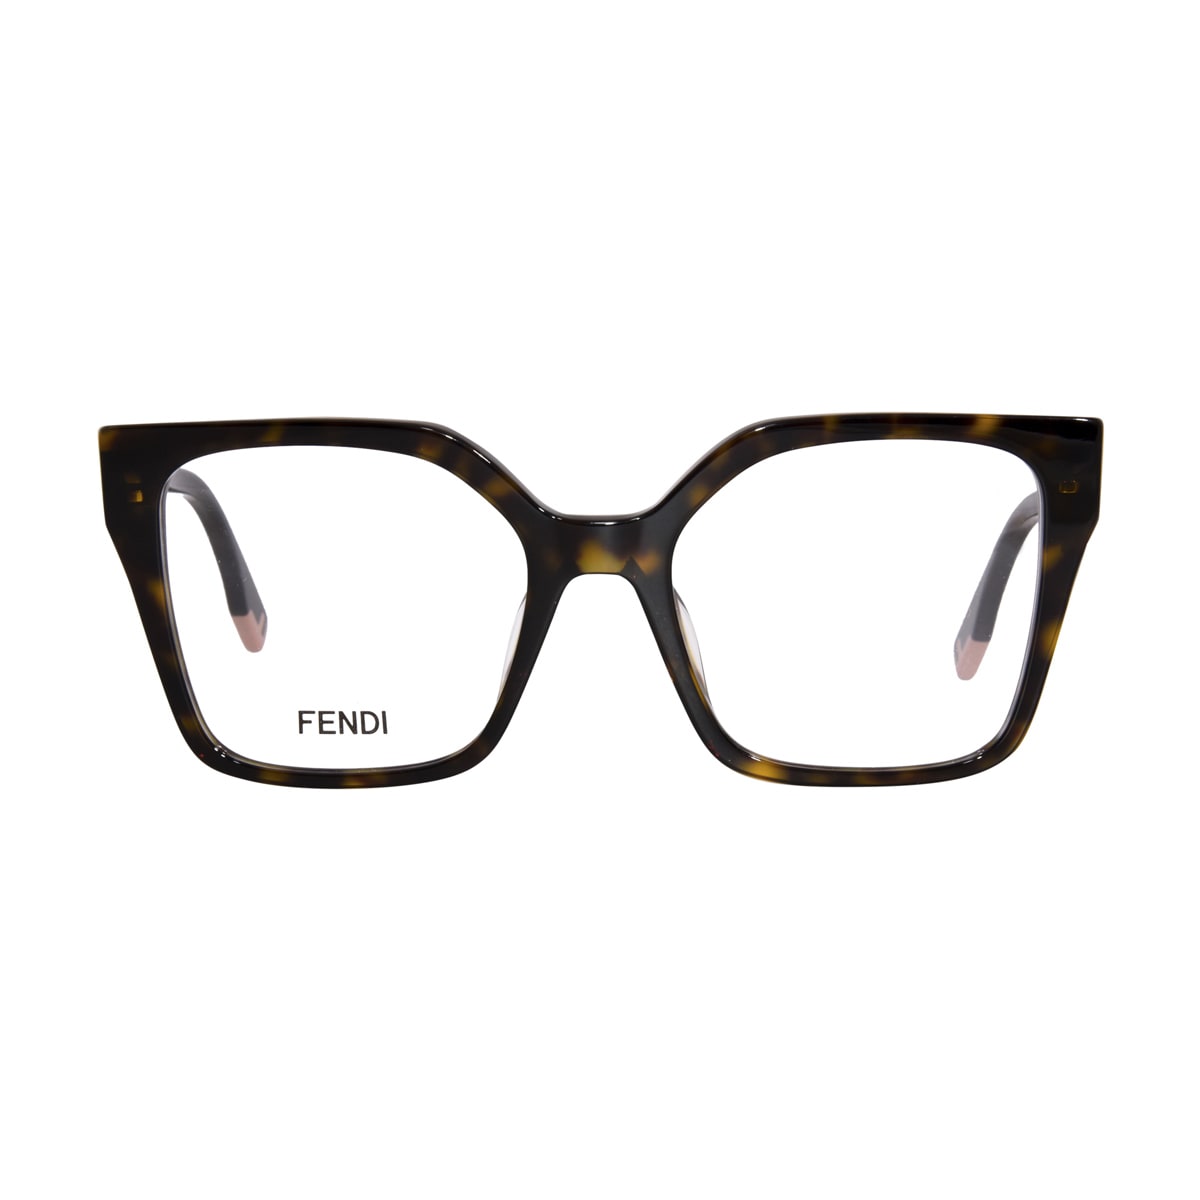 Fendi Women's Eyeglasses F935 440 Blue 51 16 135 Full Rim Cat Eye